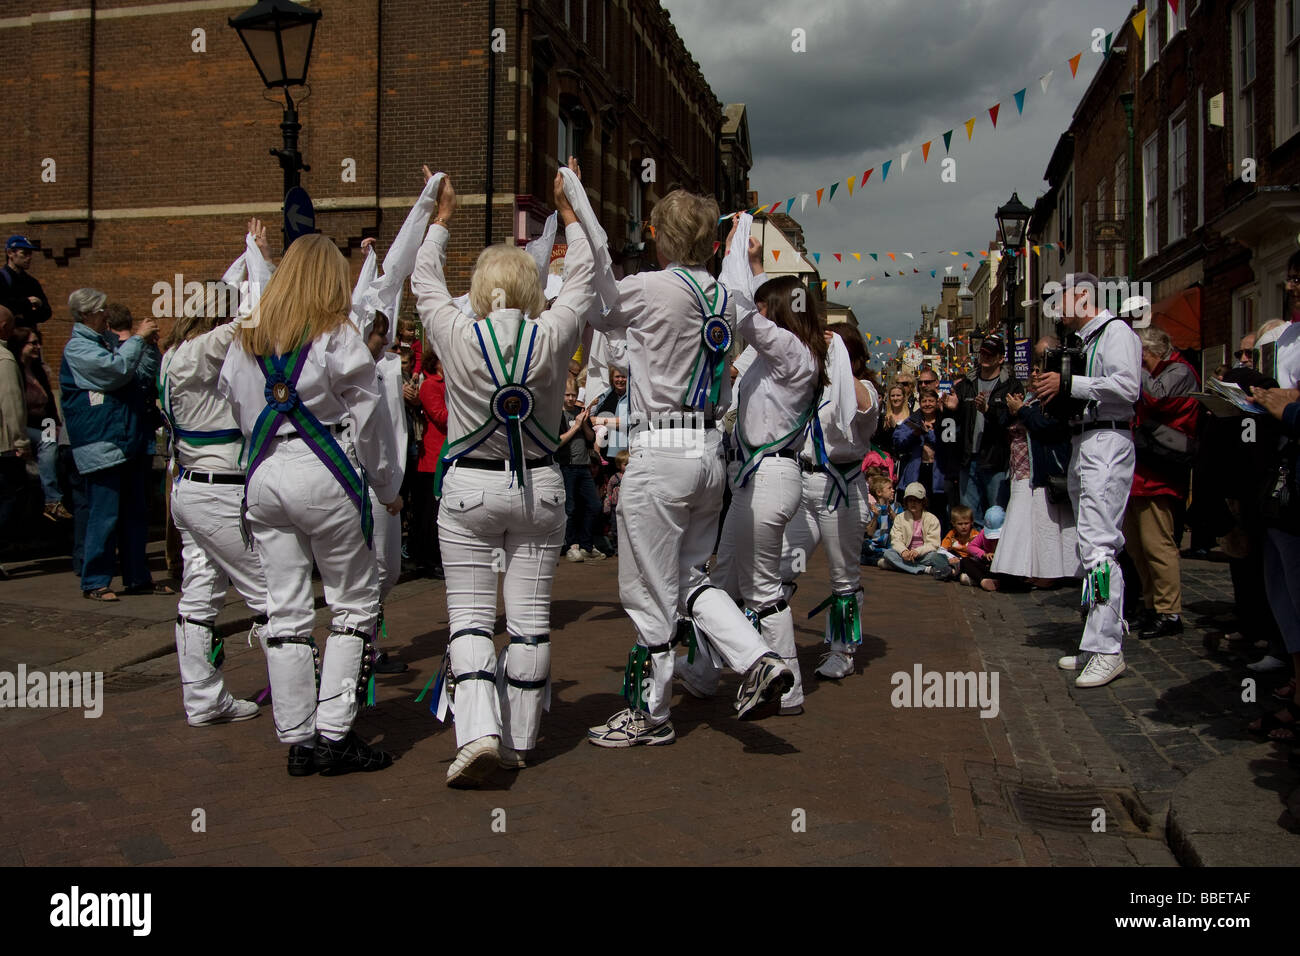 morris street artist dancer performer costume rochester sweeps festival kent england Stock Photo